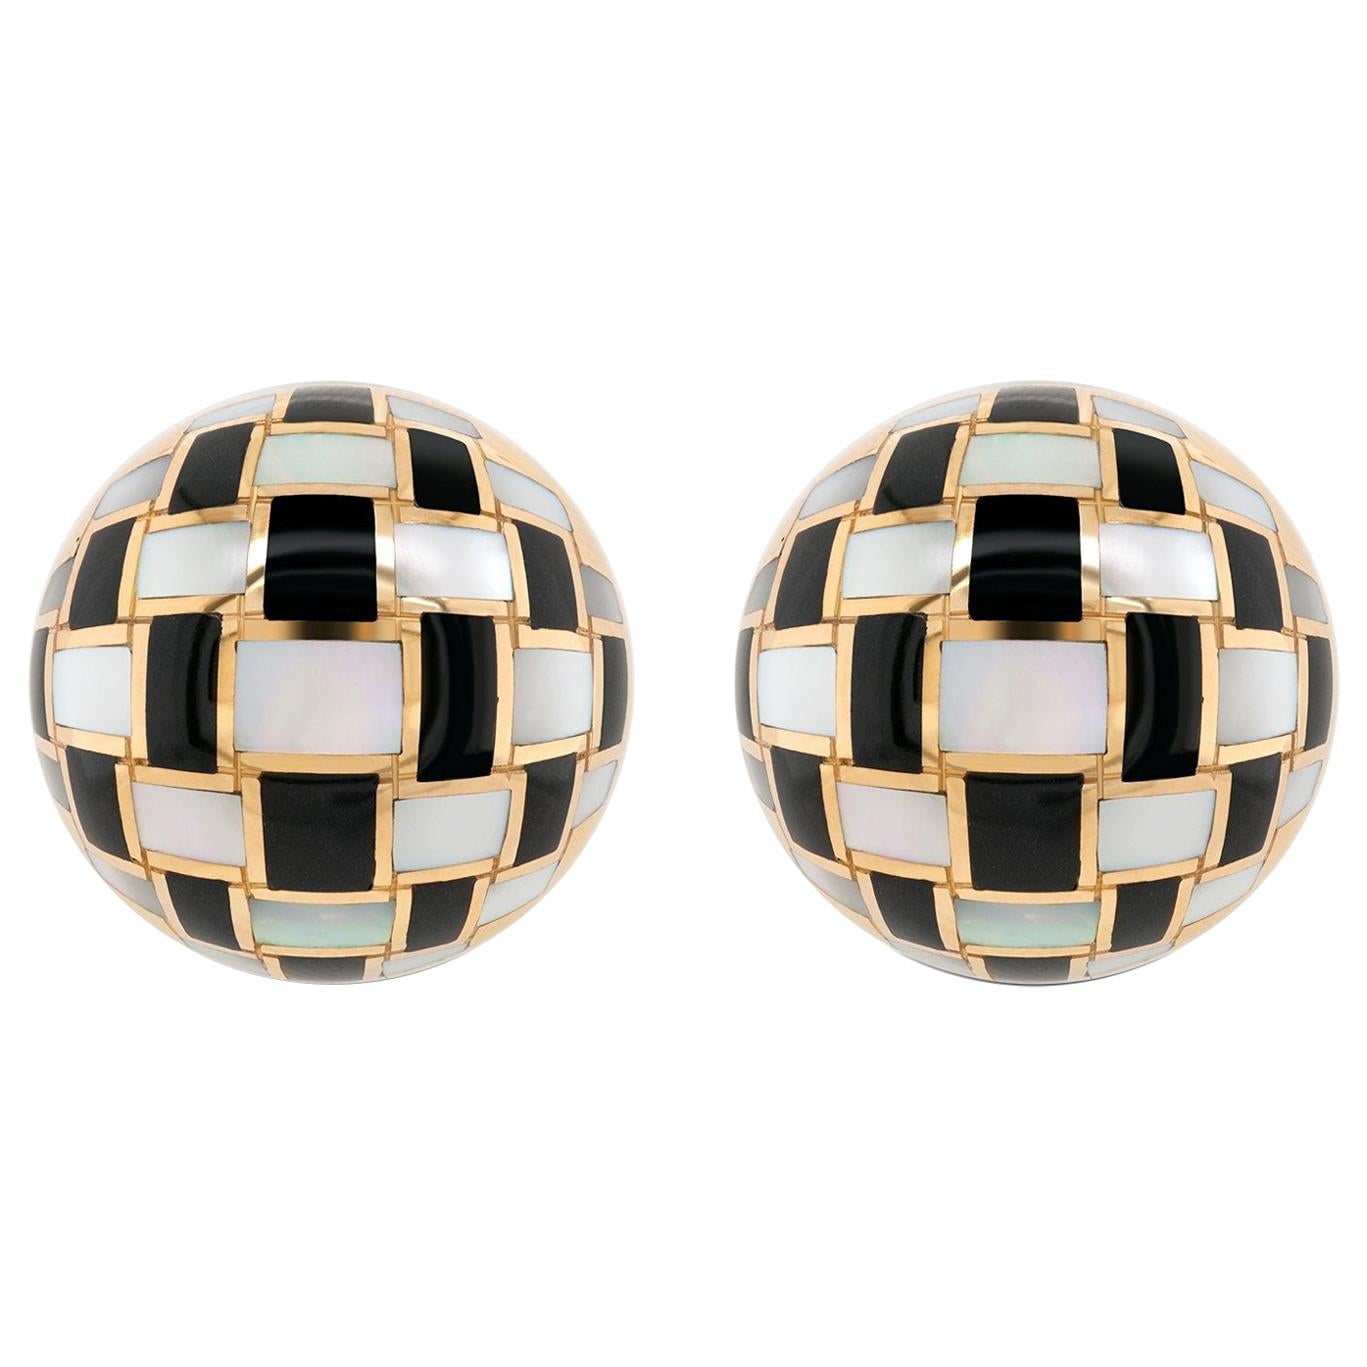 Tiffany & Co. Onyx- und Perlmutt-Ohrringe aus 18 Karat Gold im Schachbrettmuster